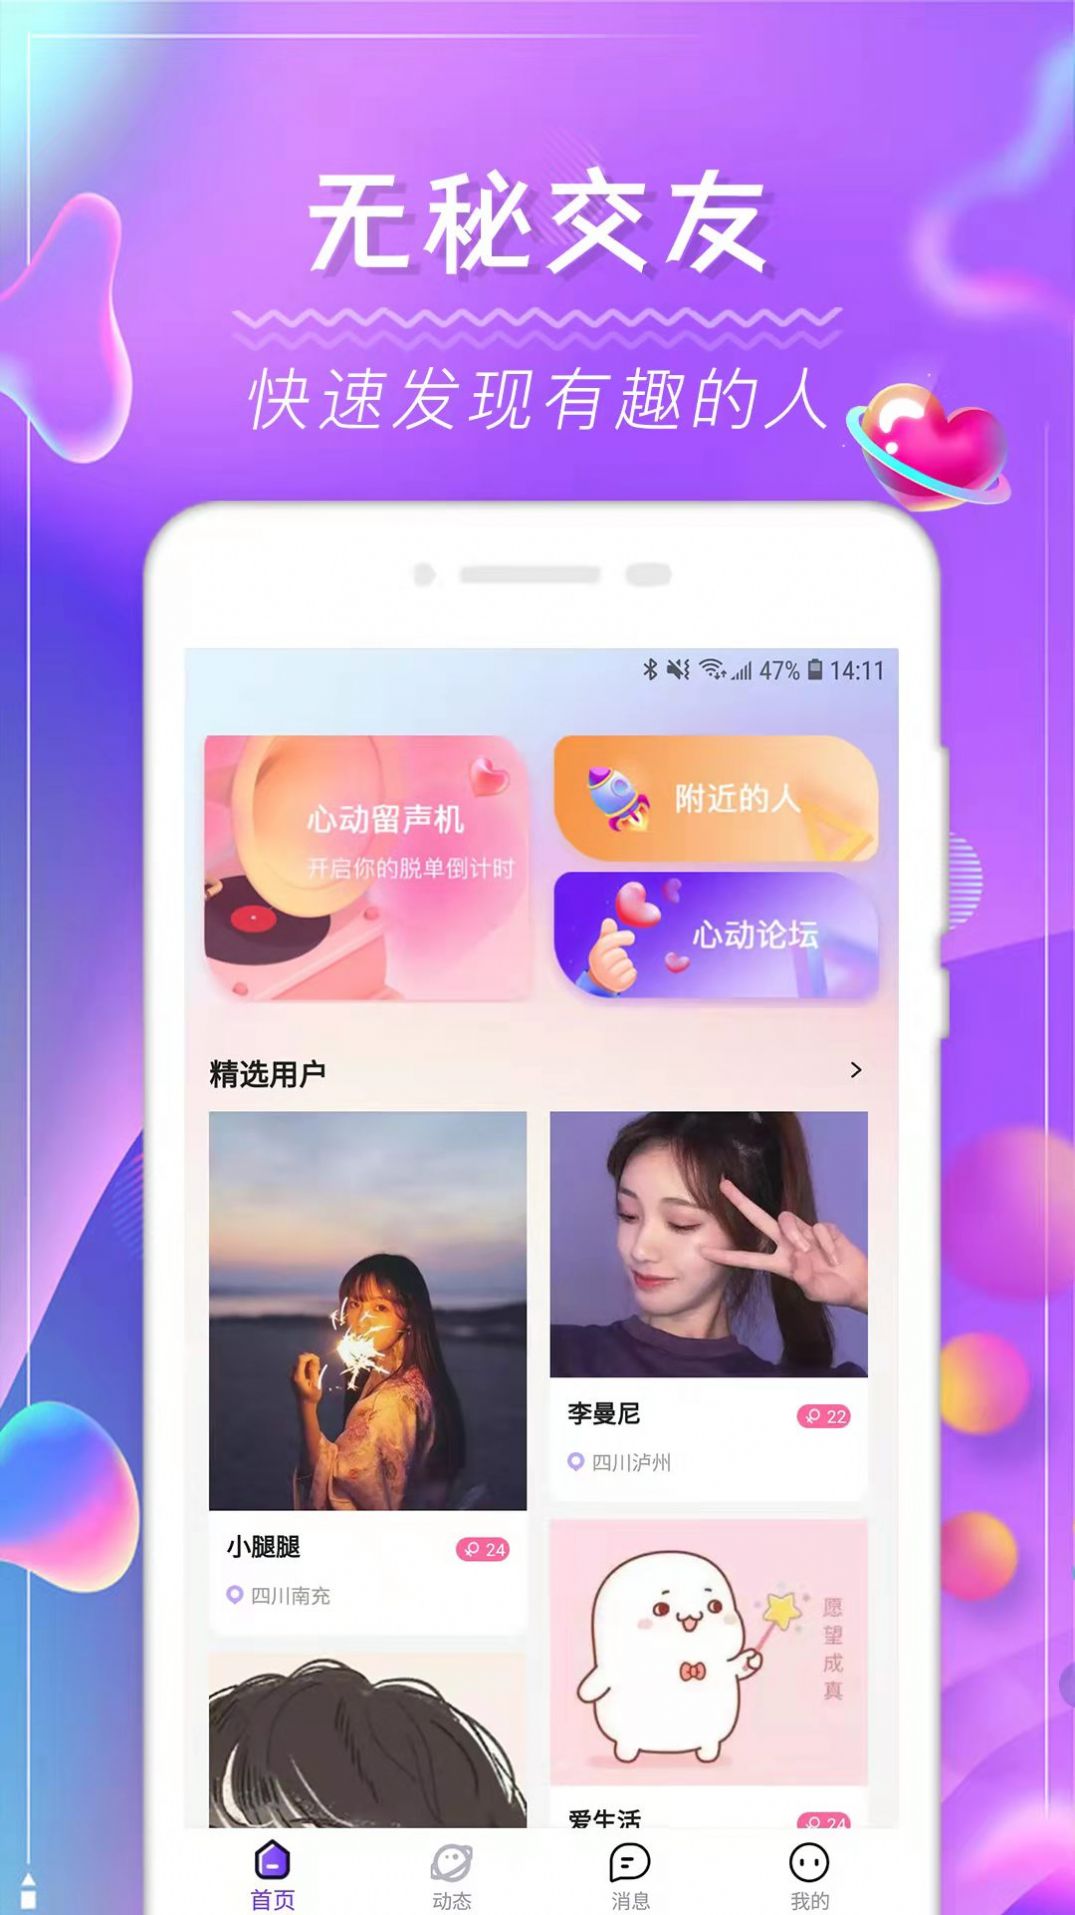 土豆交友pota app官方版 v1.0.0